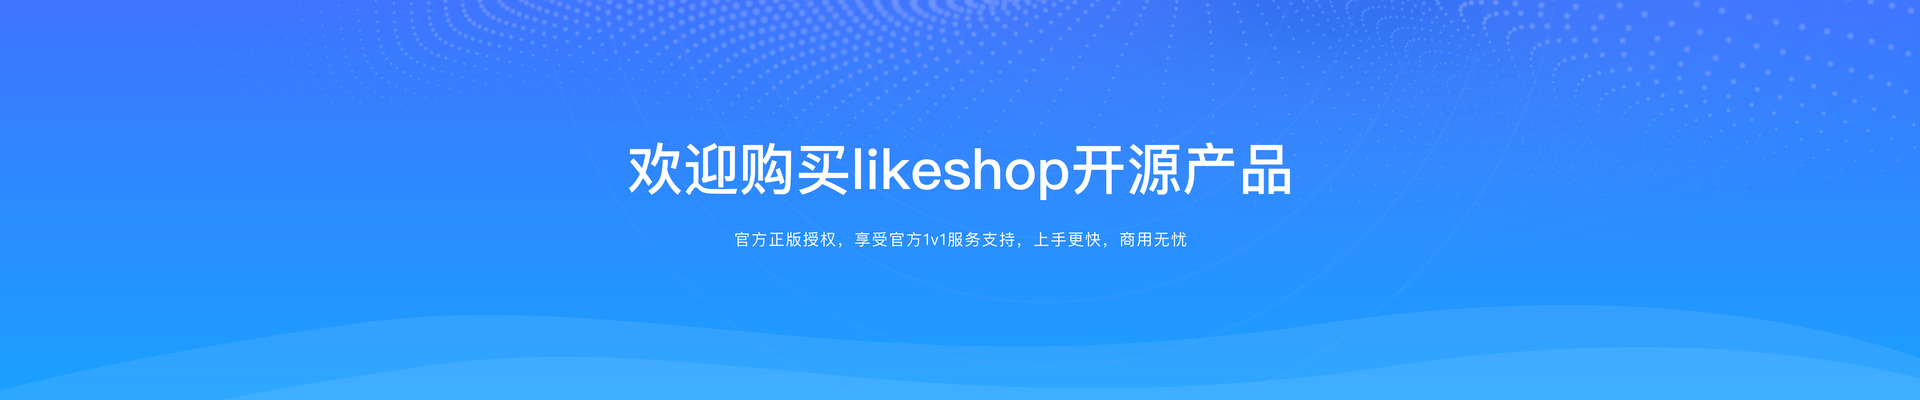 欢迎购买likeshop开源产品